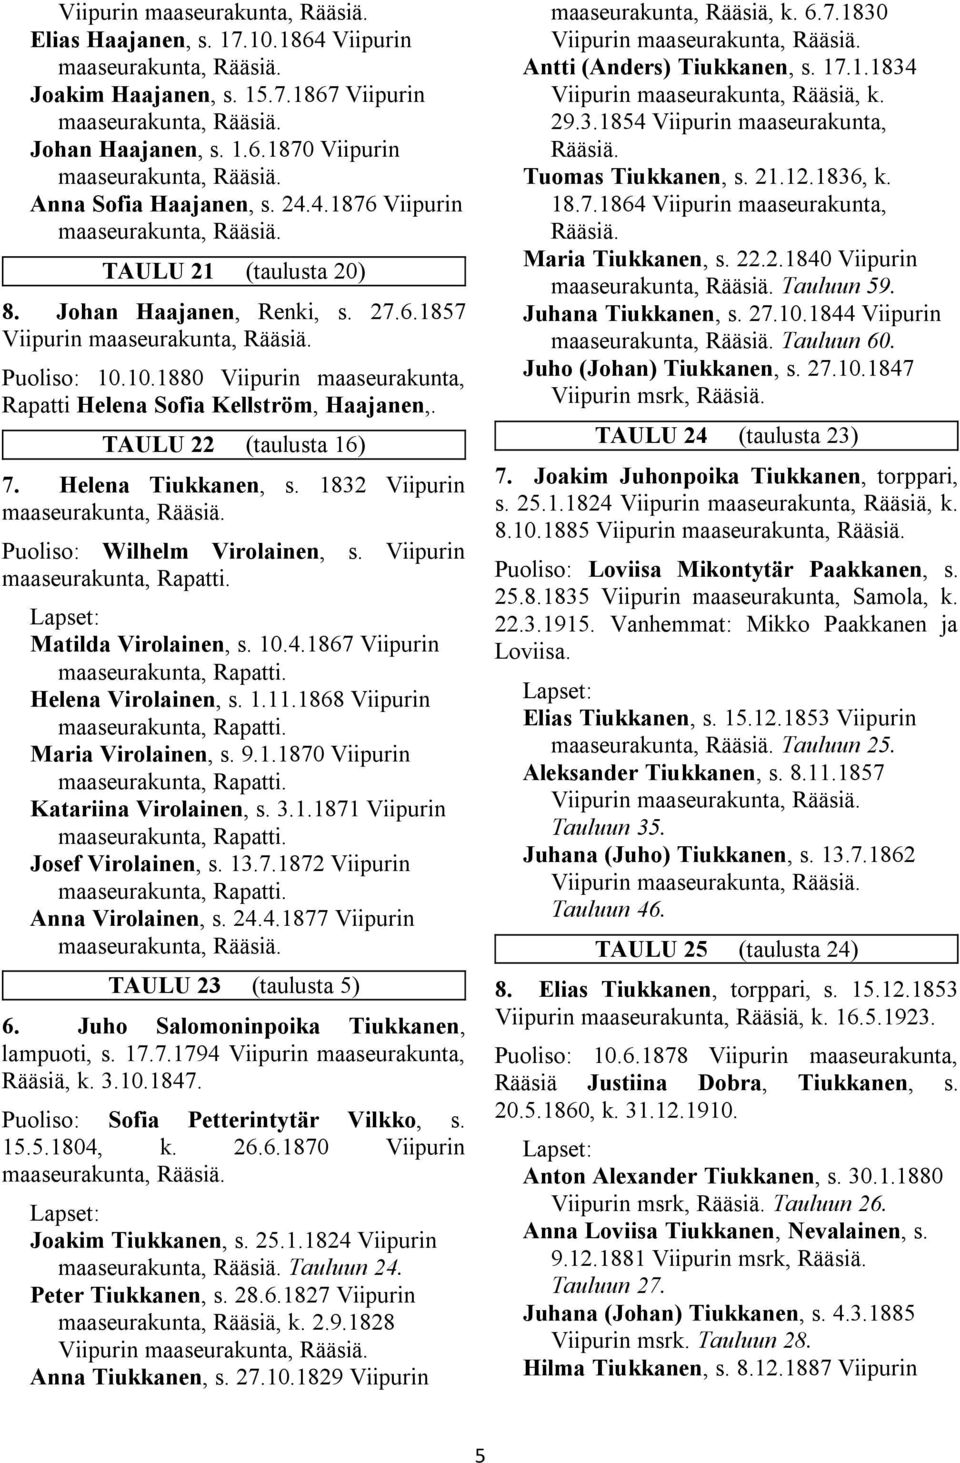 1832 Viipurin Puoliso: Wilhelm Virolainen, s. Viipurin maaseurakunta, Rapatti. Matilda Virolainen, s. 10.4.1867 Viipurin maaseurakunta, Rapatti. Helena Virolainen, s. 1.11.